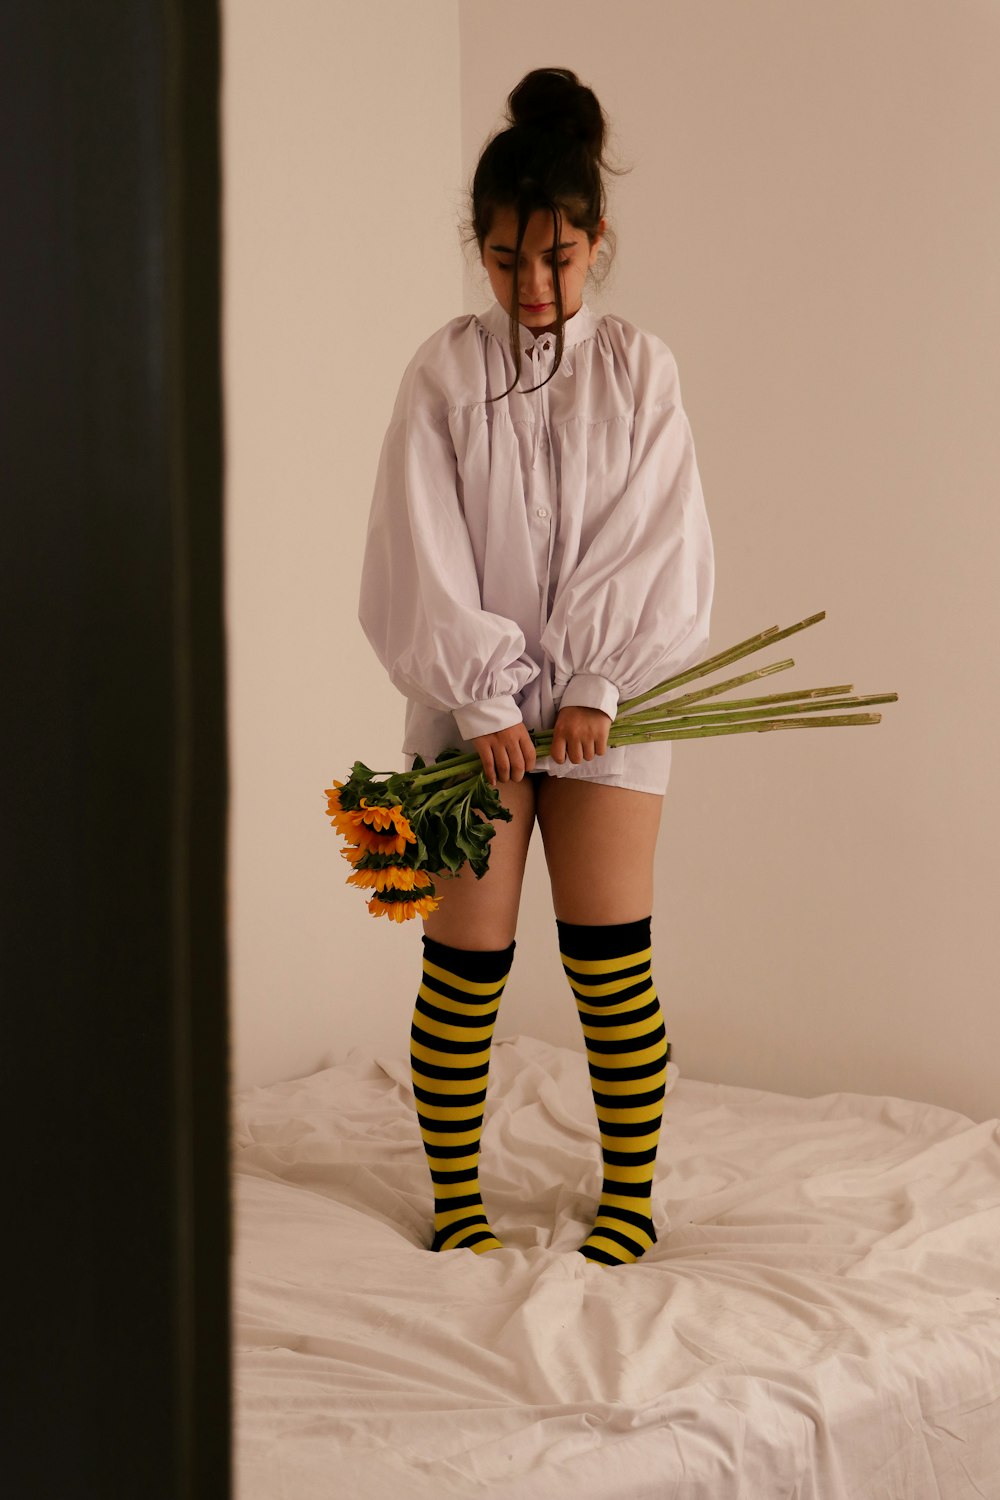 Una mujer de pie encima de una cama sosteniendo un ramo de flores